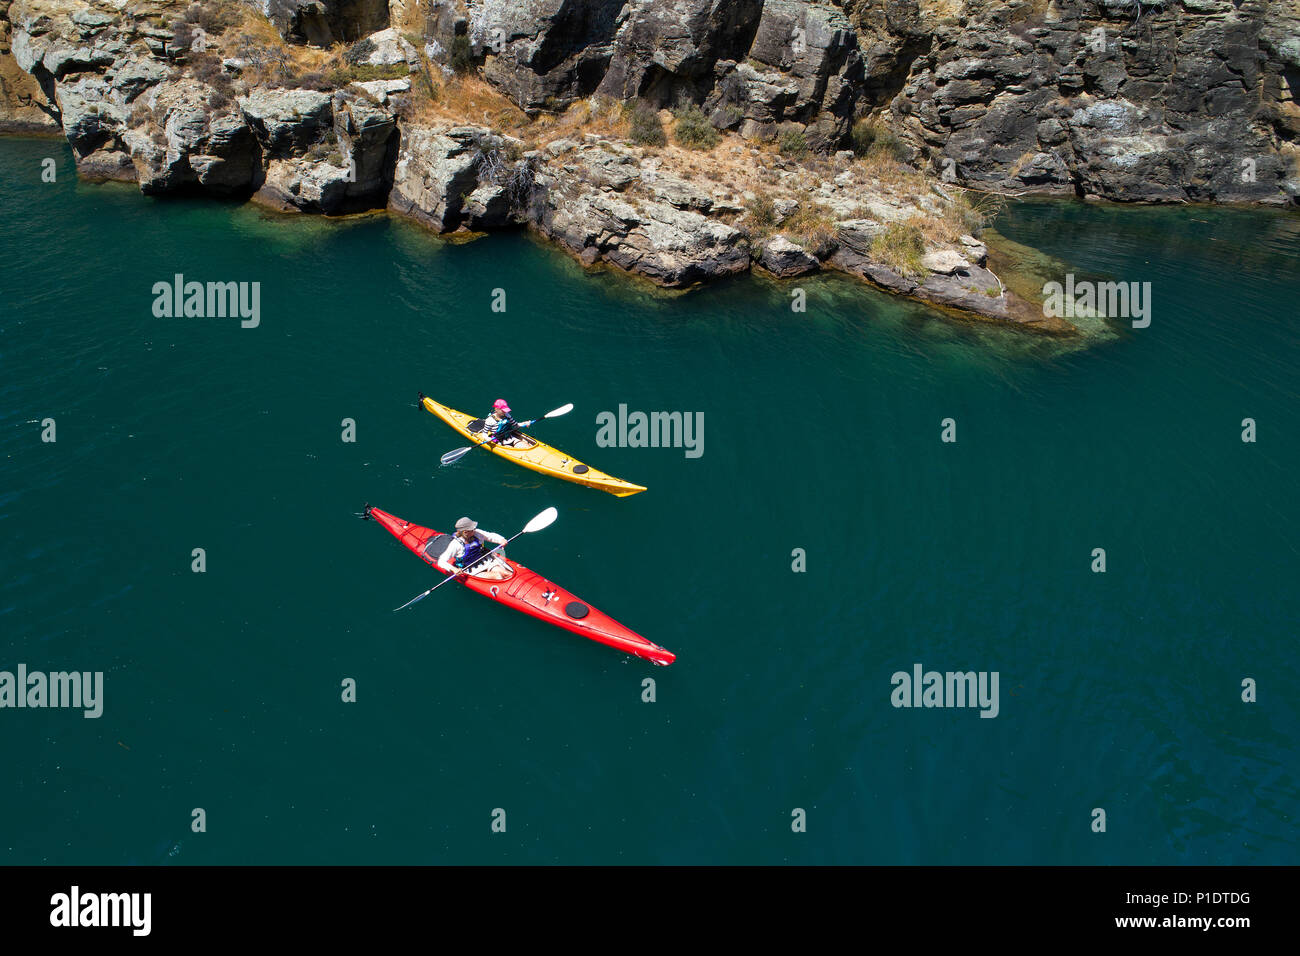 Los palistas y acantilados, Cromwell Gorge, Lago Dunstan, Central Otago, Isla del Sur, Nueva Zelanda - antena drone Foto de stock